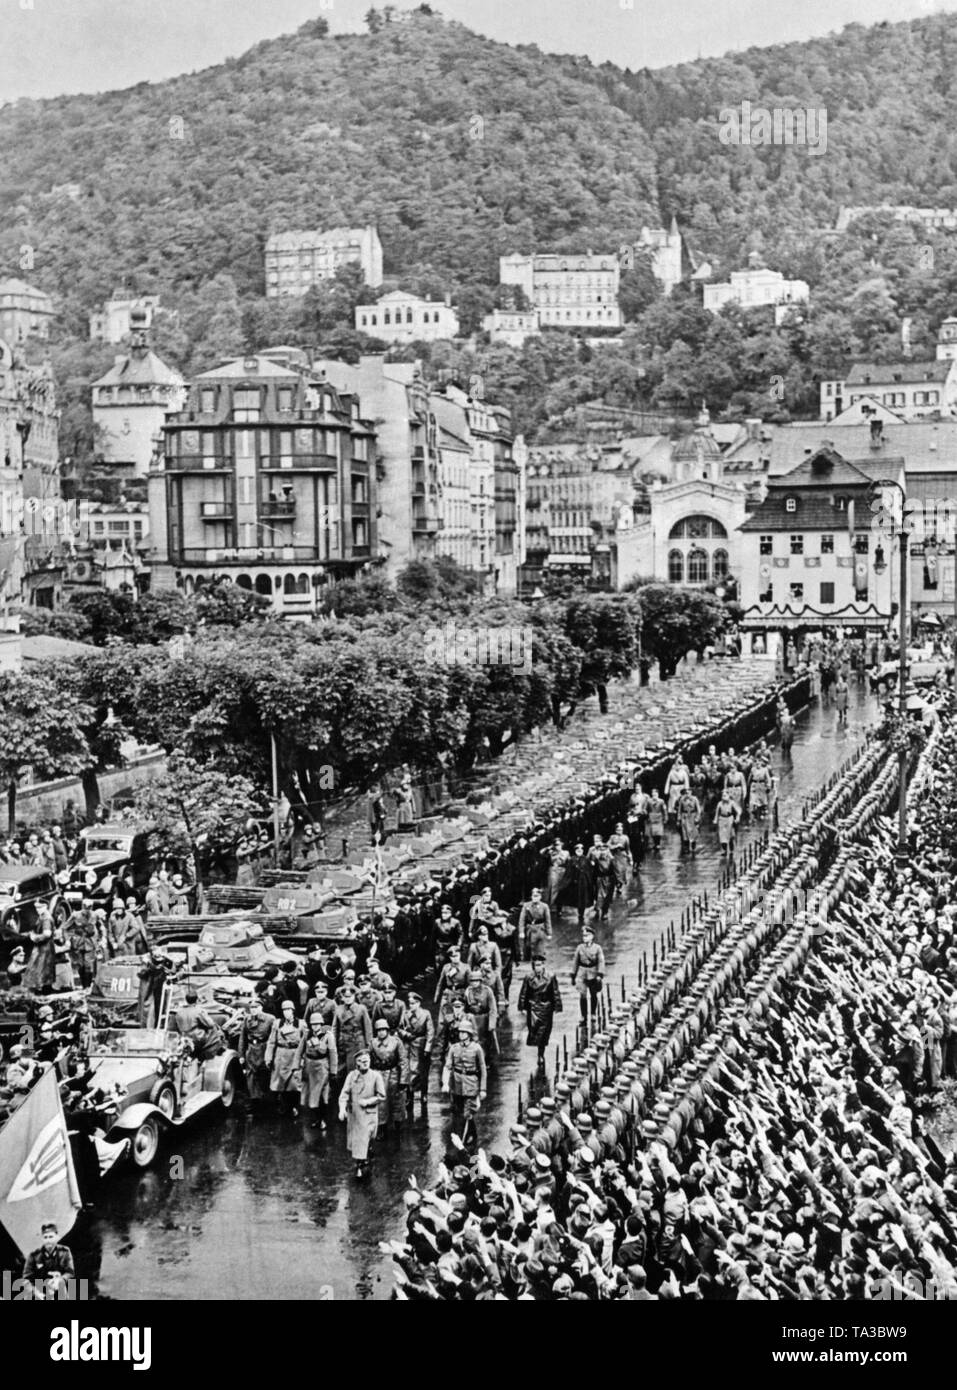 L'invasione delle truppe tedesche in Karlsbad (oggi Karlovy Vary). Alla testa della processione, Adolf Hitler. A sinistra lungo la strada sono serbatoi. Sulla destra, soldati e persone. Sulla sinistra una bandiera del SdP, i Sudeti partito tedesco. Foto Stock